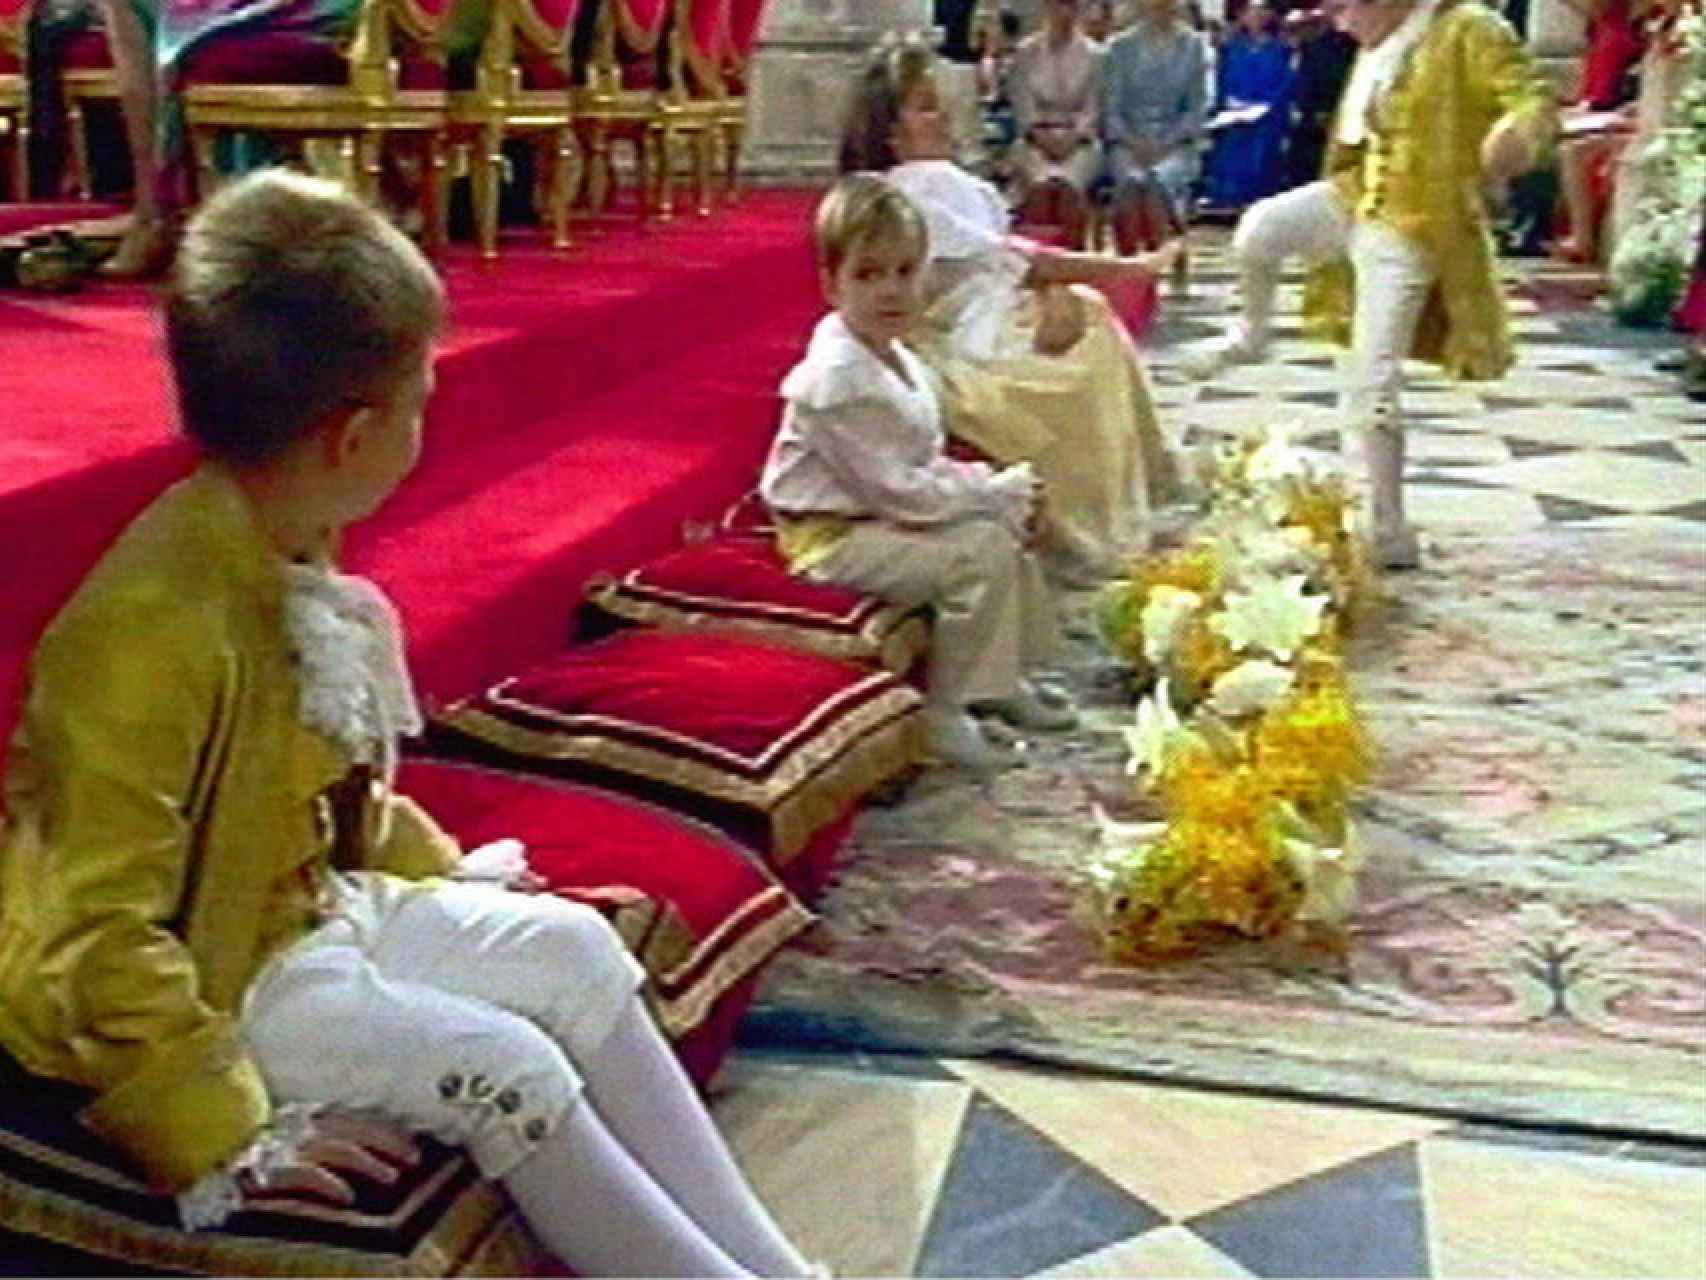 Froilán dando una patada a su prima mayor en la boda de Felipe VI y Letizia.